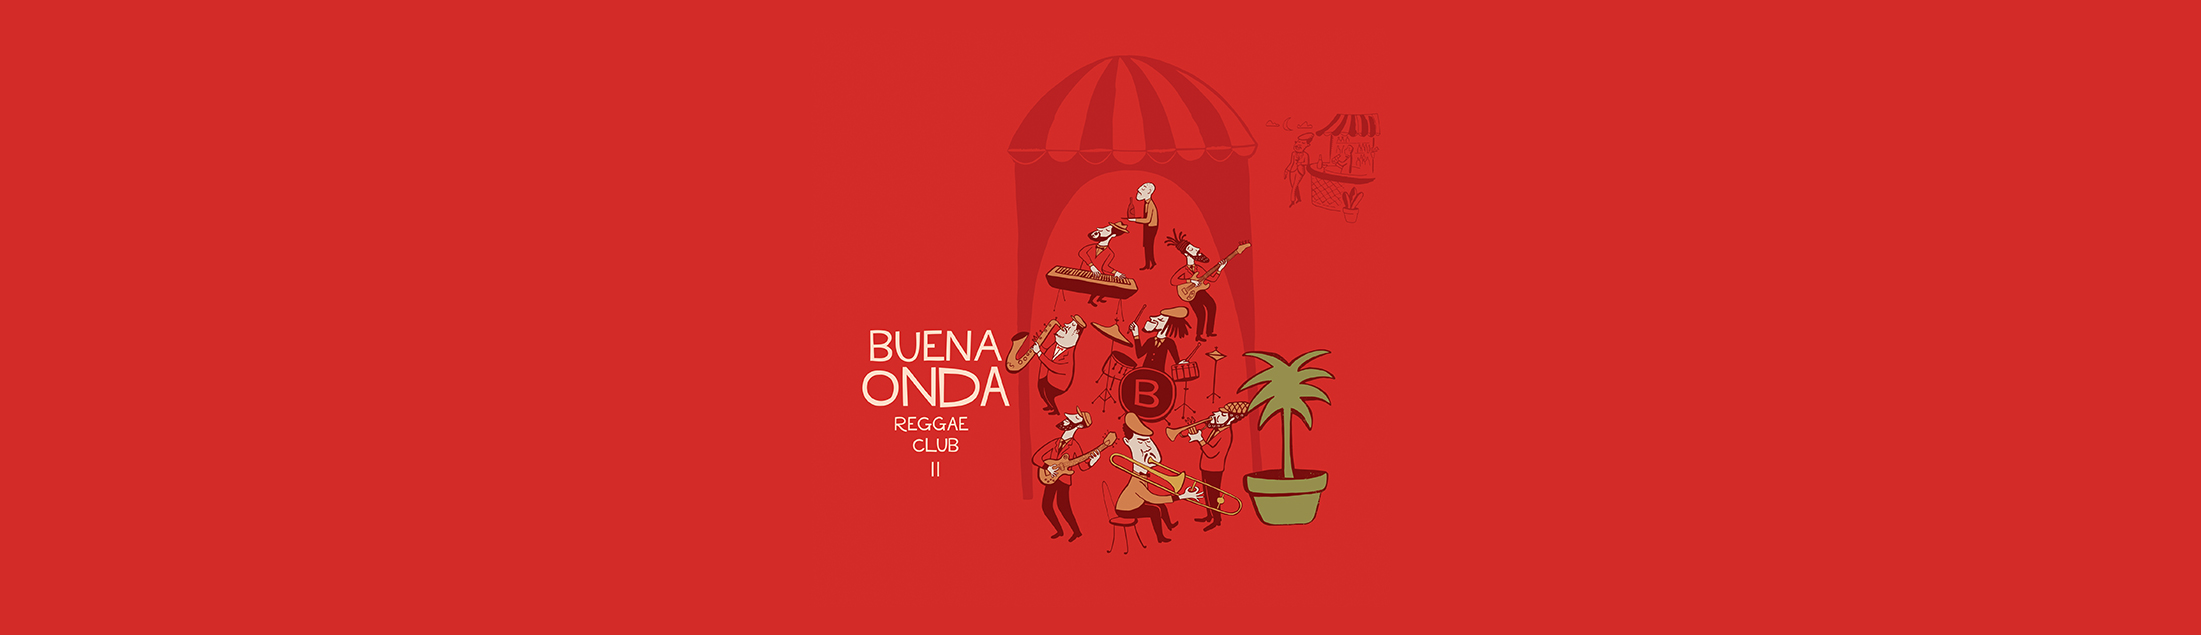 Buena Onda Reggae Club conecta ska, reggae e sonoridades do mundo em novo álbum